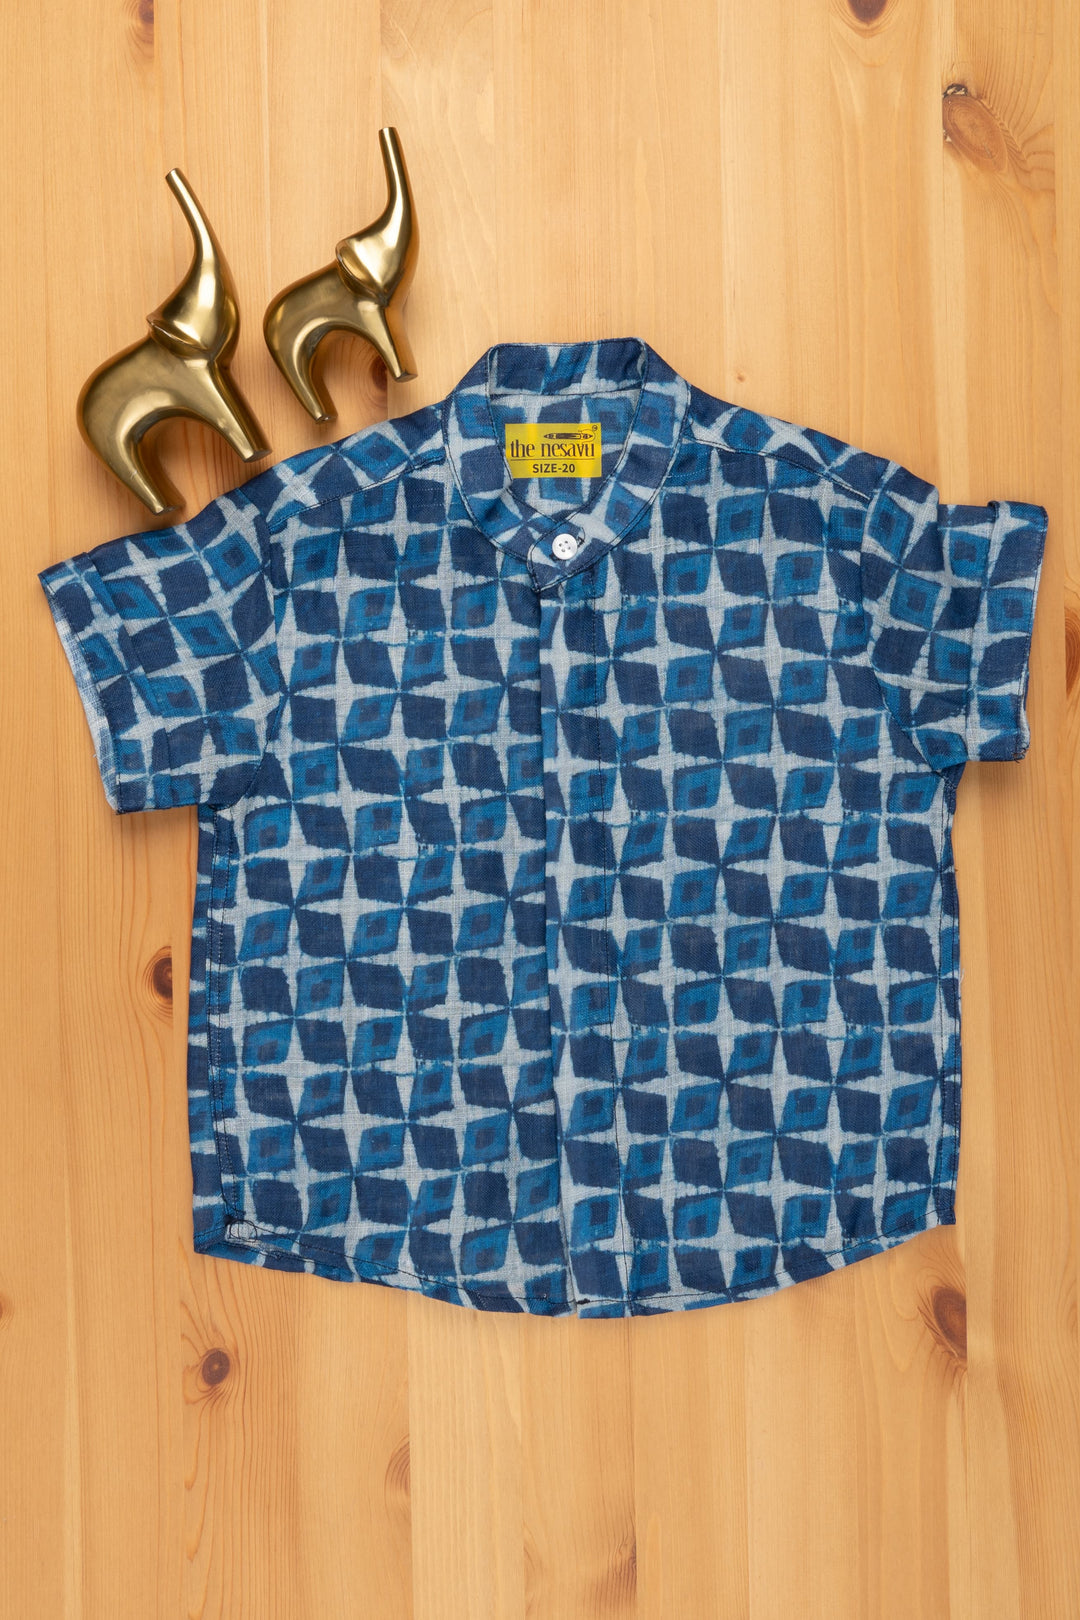 The Nesavu Boys Linen Shirt Boho Chic in Indigo: Linen Boys' Shirt with Artistic Prints for a Free-Spirited Style Nesavu 14 (6M) / Blue / Linen BS053 Linen Boys Shirt with Artistic Prints | Boys Premium Shirt | The Nesavu